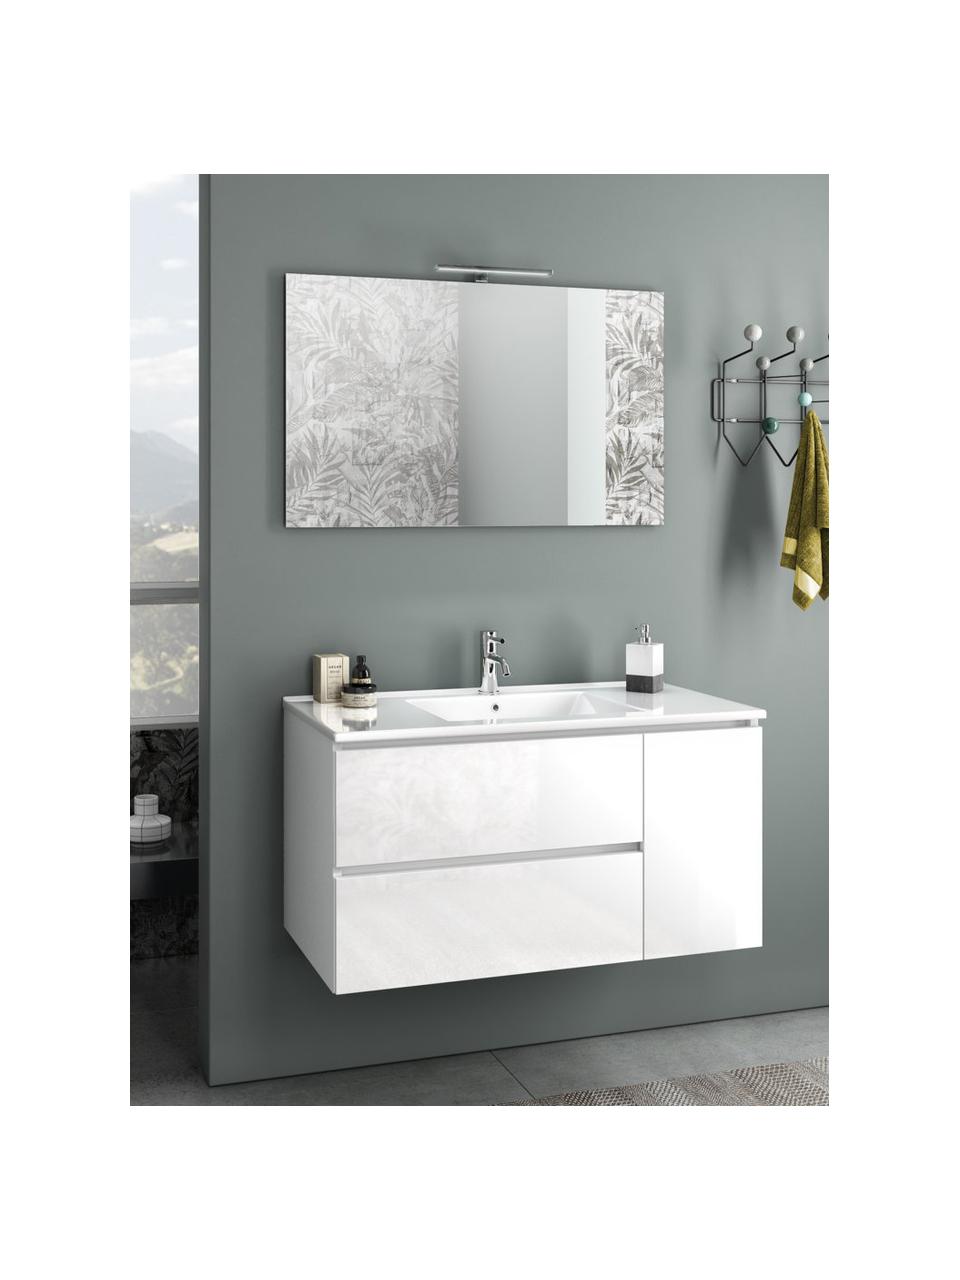 Waschtisch-Set Flam, 4-tlg., Spiegelfläche: Spiegelglas, Rückseite: ABS-Kunststoff, Weiß, Set mit verschiedenen Größen